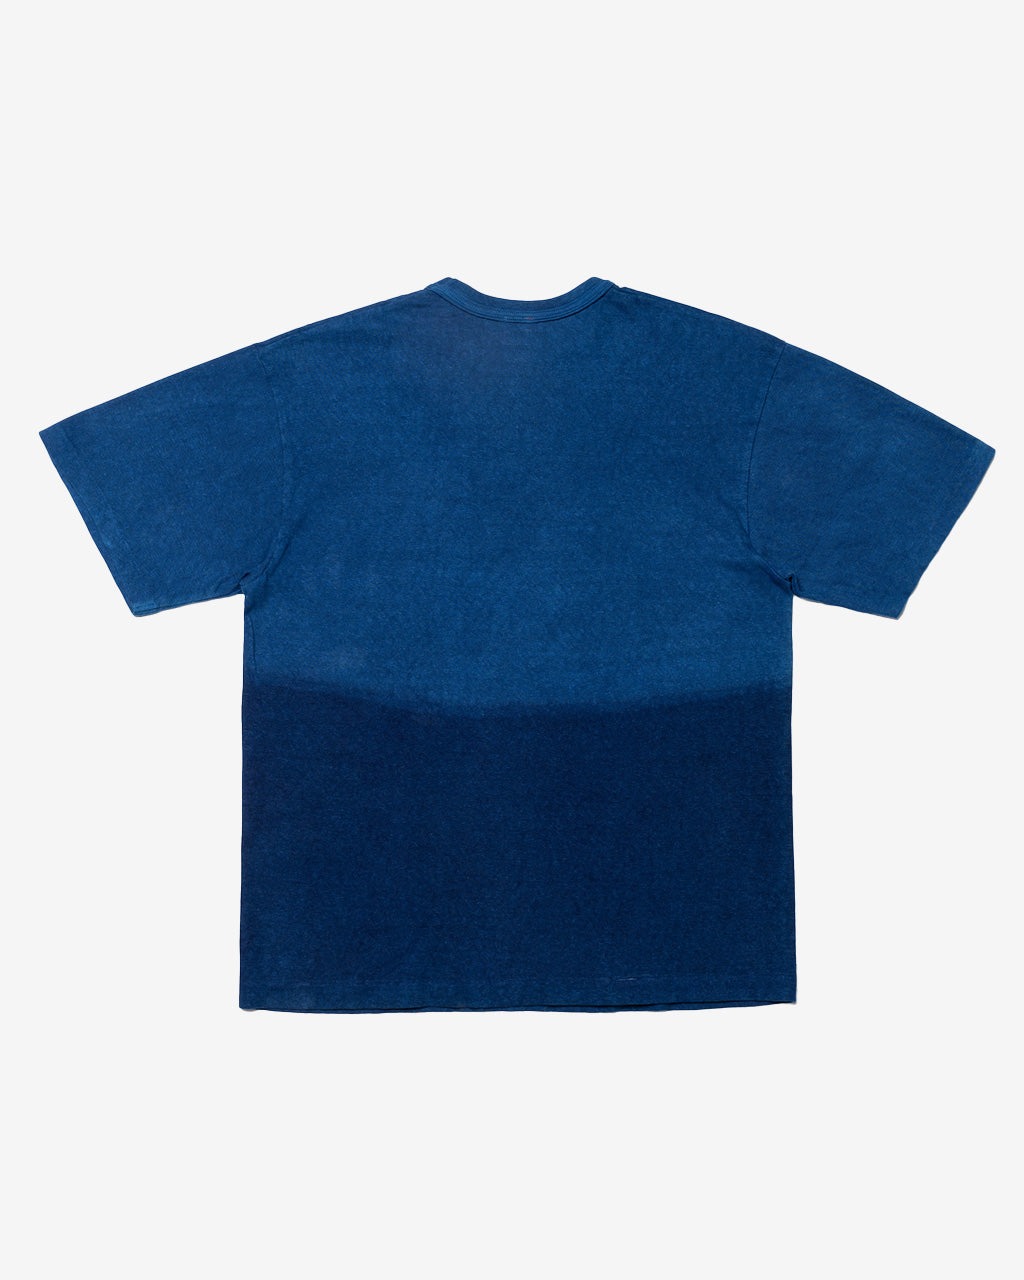 Indigo Dyed T-Shirt #1 Indigo